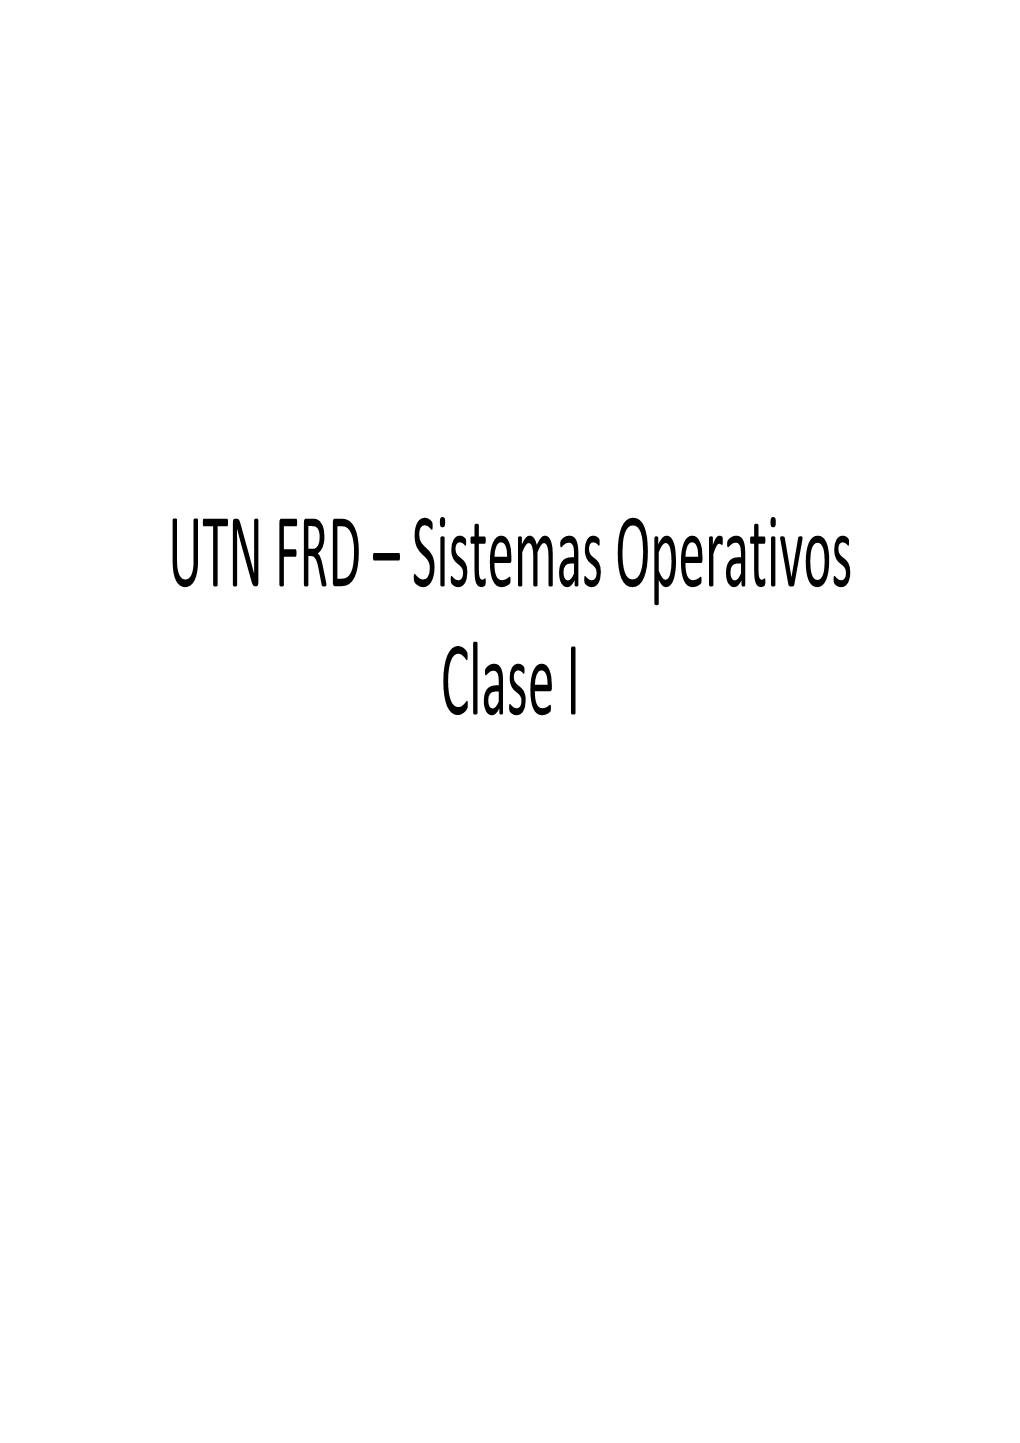 UTN FRD – Sistemas Operativos Clase I Basic Elements